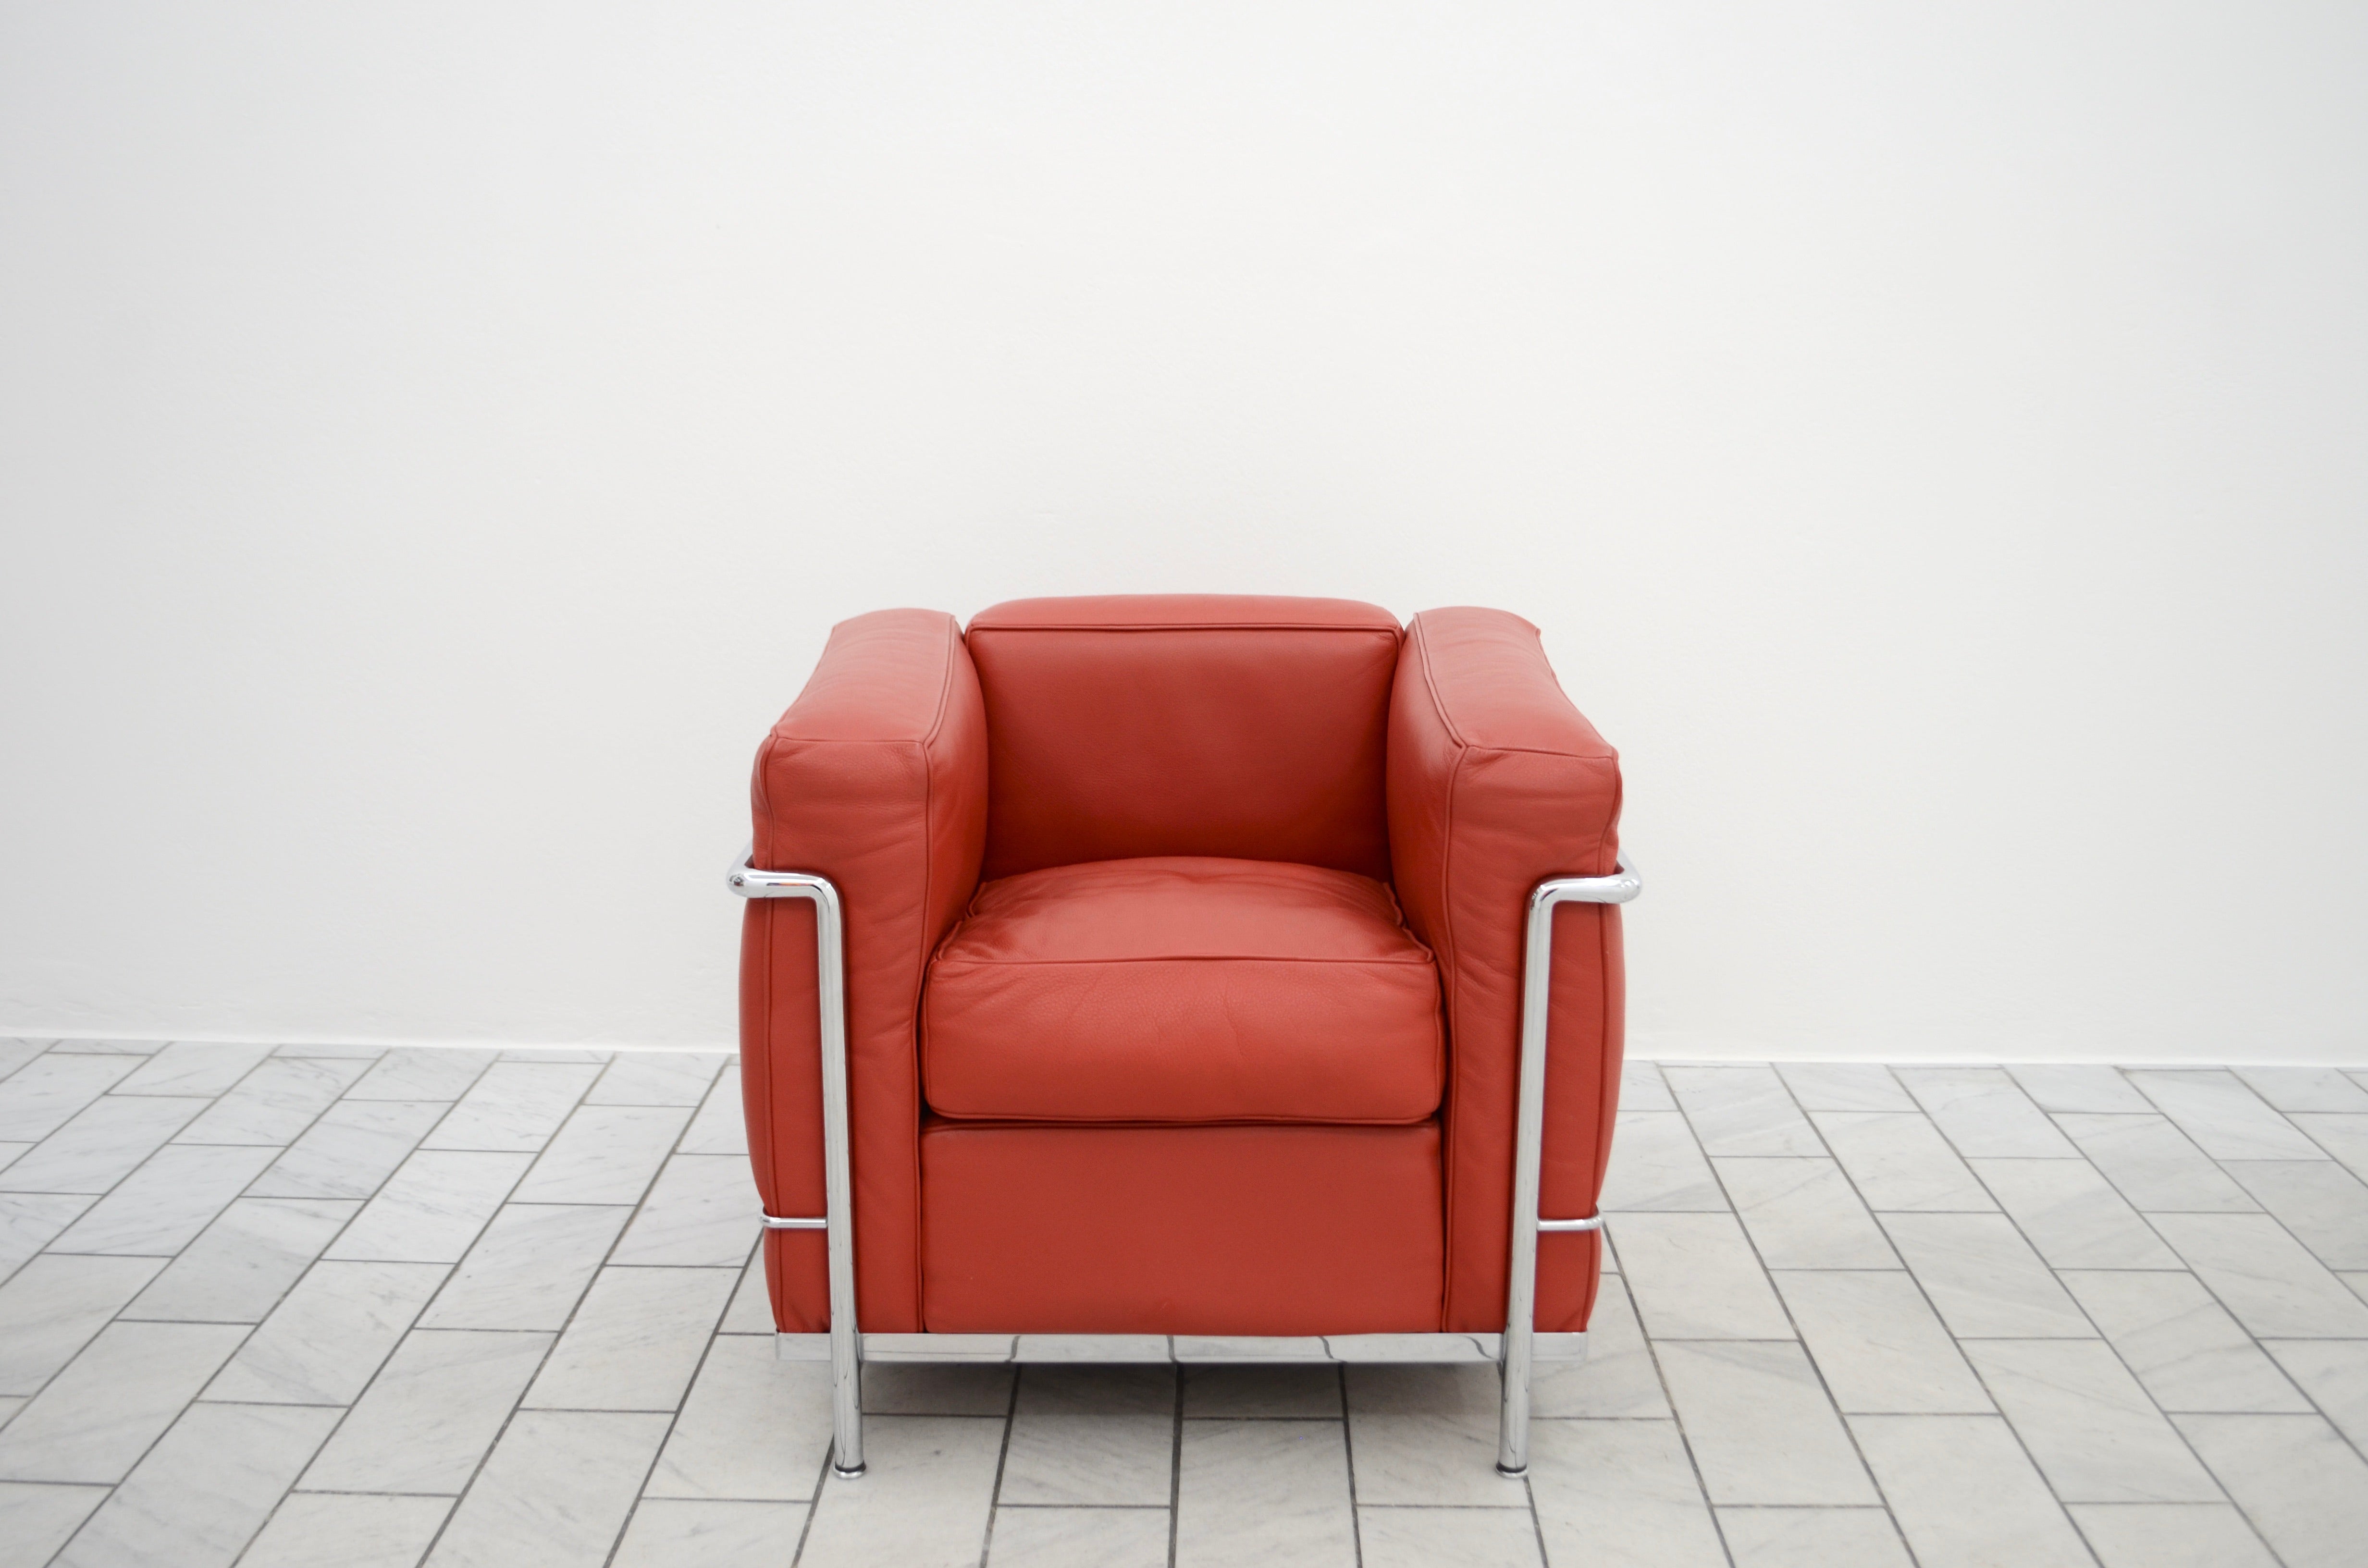 Ce fauteuil LC2 en rouge  Le cuir carmin a été conçu par Le Corbusier et produit par Cassina. 
Il est doté d'un cadre en acier chromé. 
Objet classique moderne du Bauhaus en bon état.
LCX Scozia
Carminio
Z Qualité du cuir
13X290
